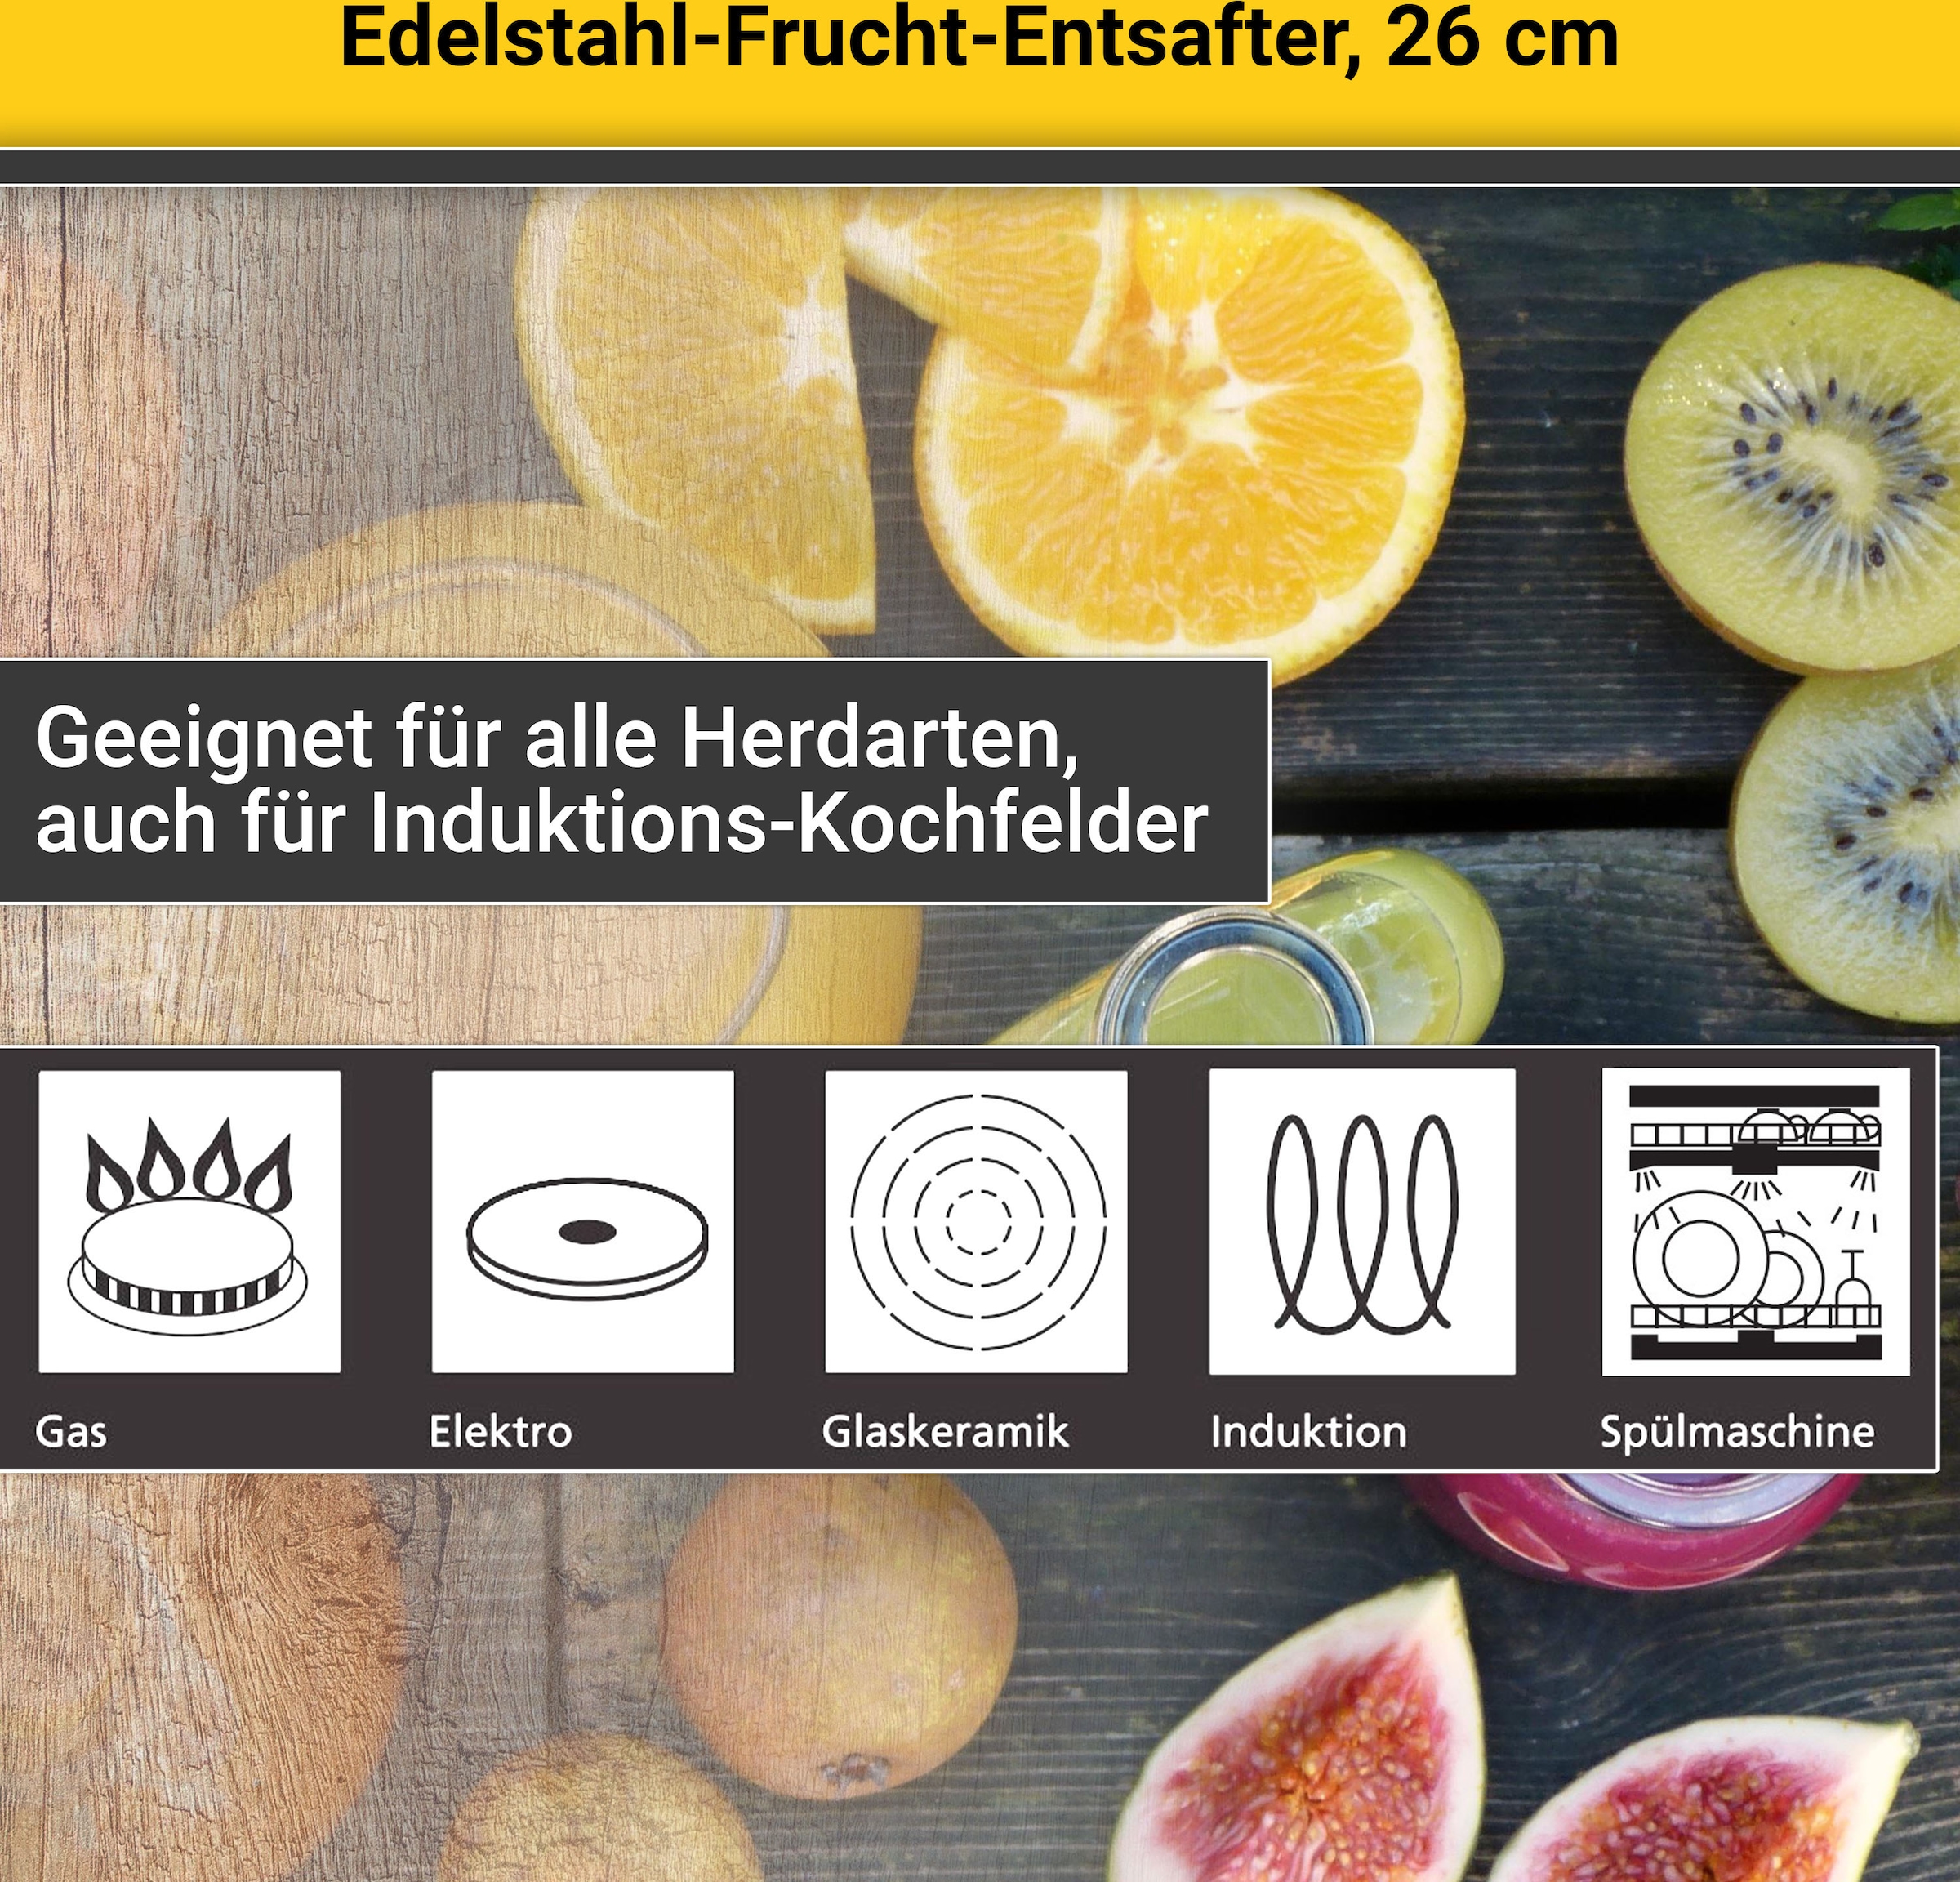 Edelstahl, Krüger Fruchtentsafter, Induktion Einkochtopf, | BAUR